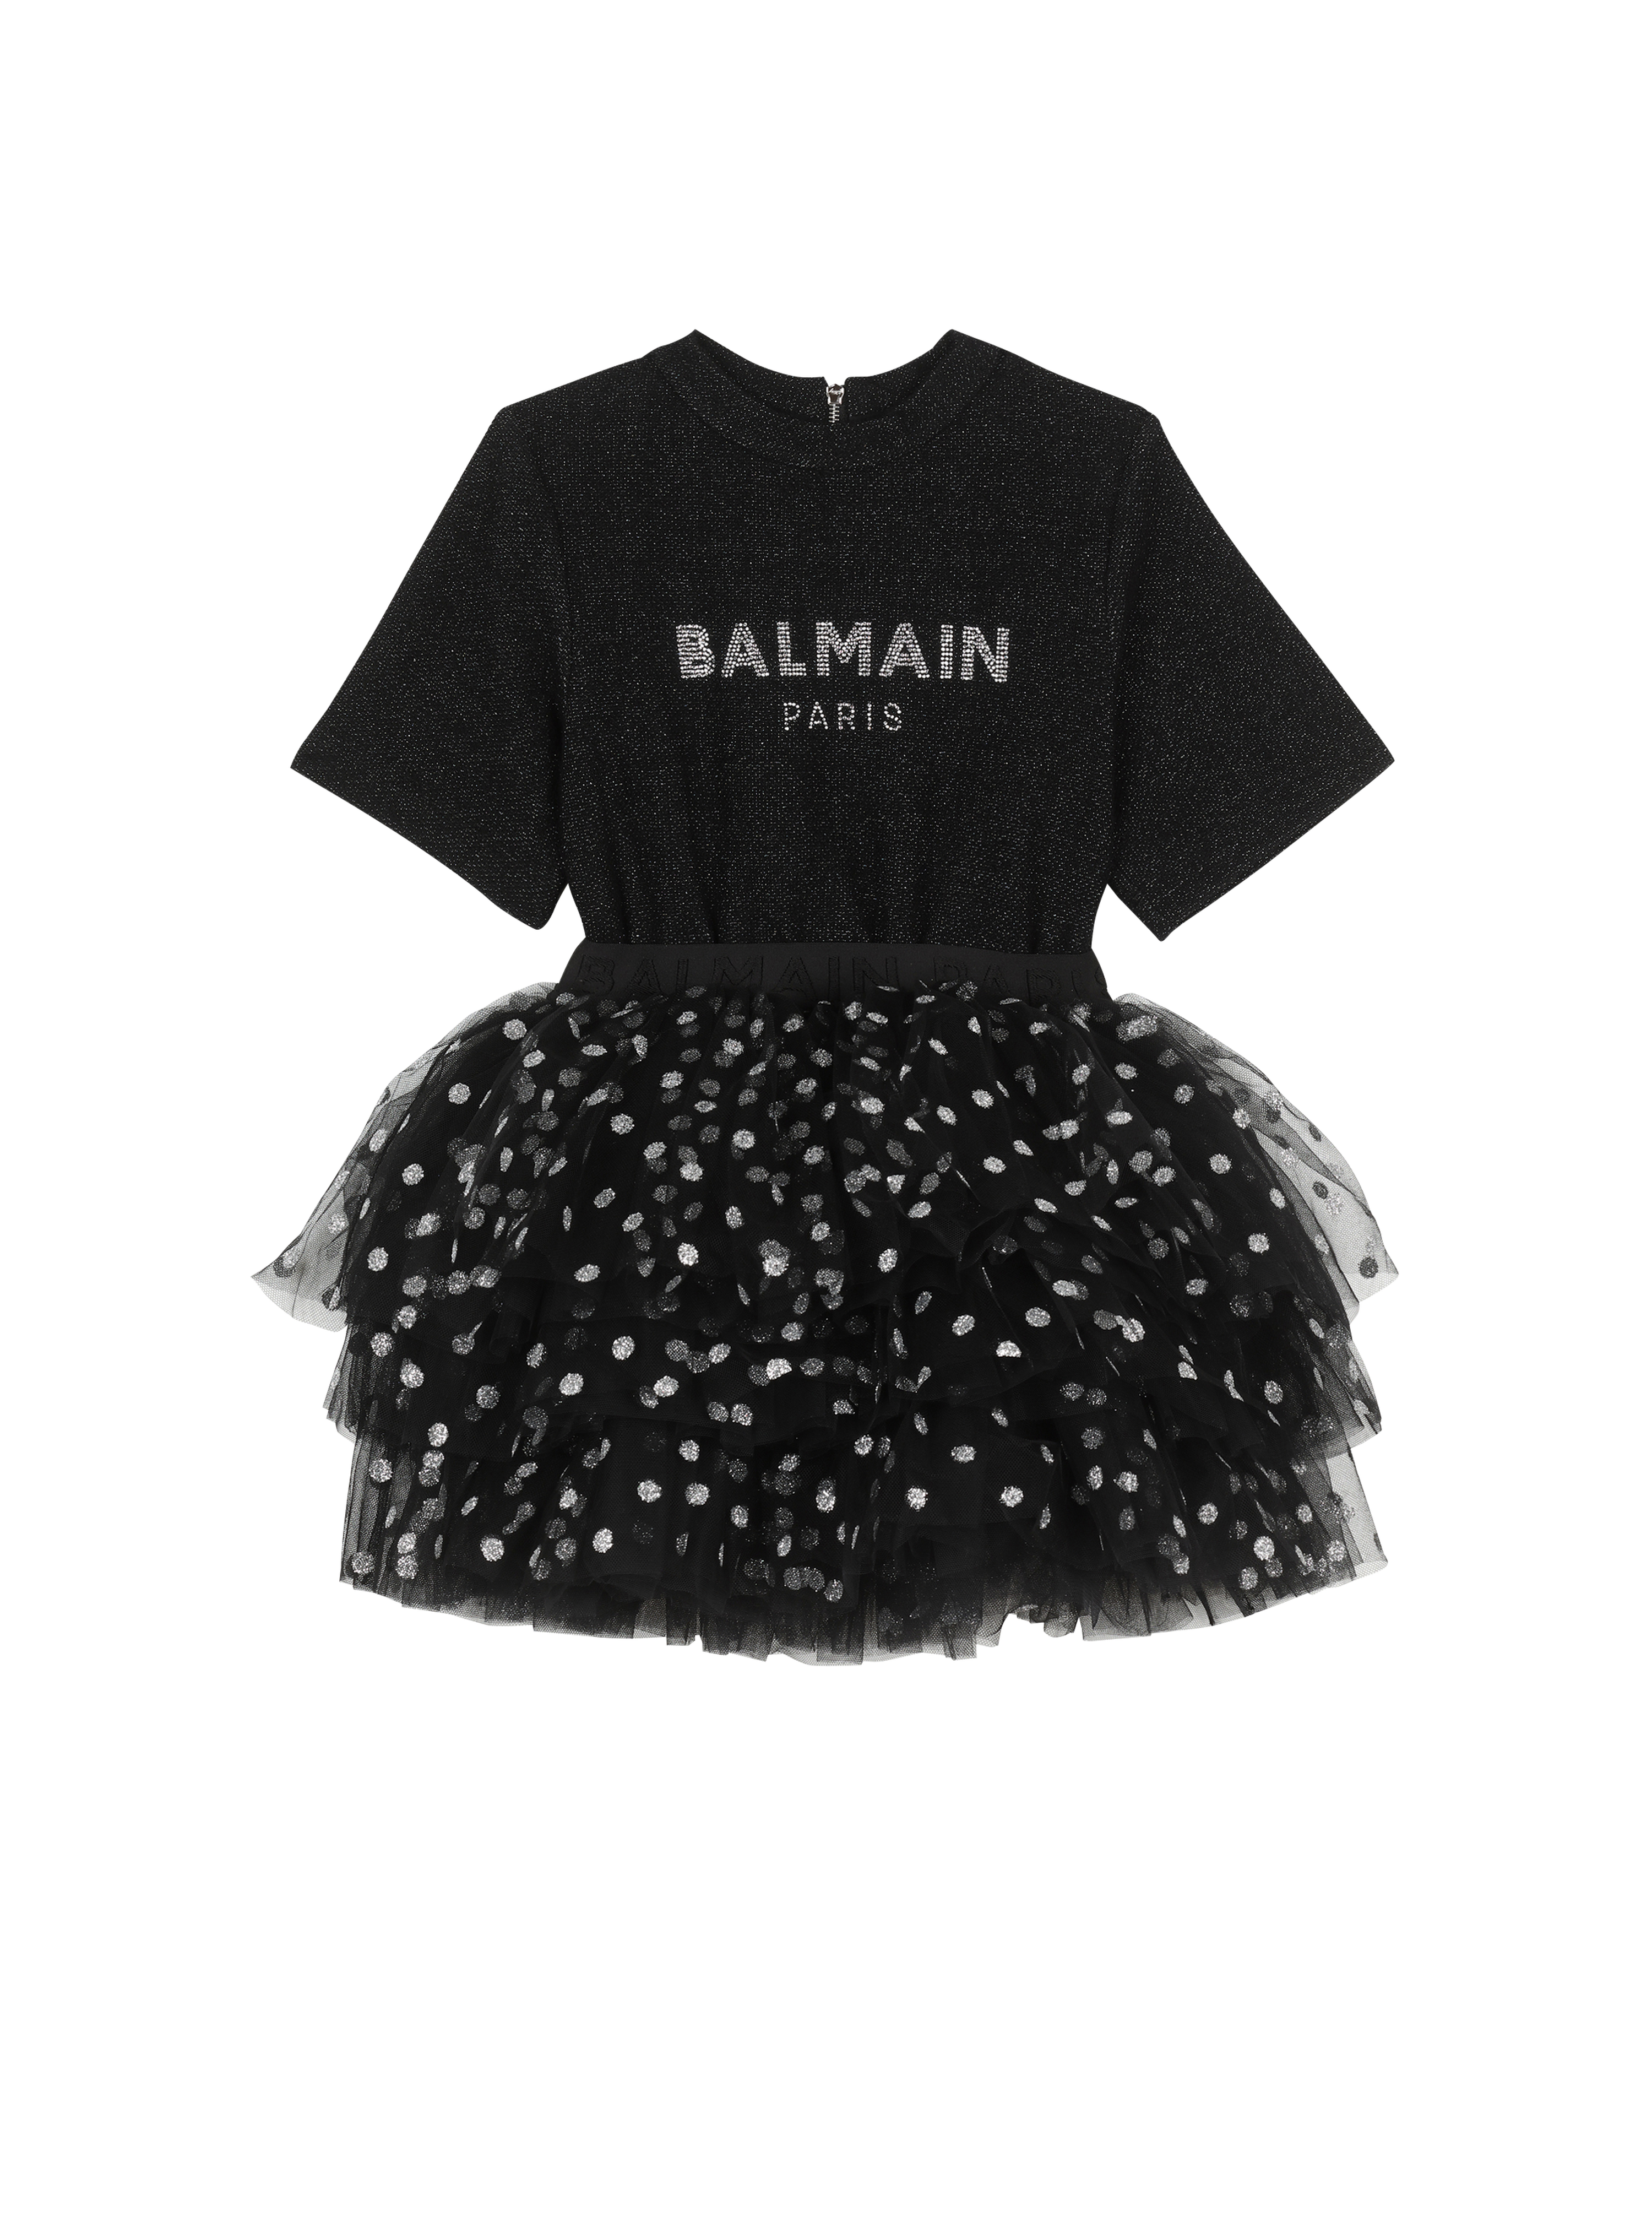 バルマンロゴ入りのコットン製ドレス, 黒